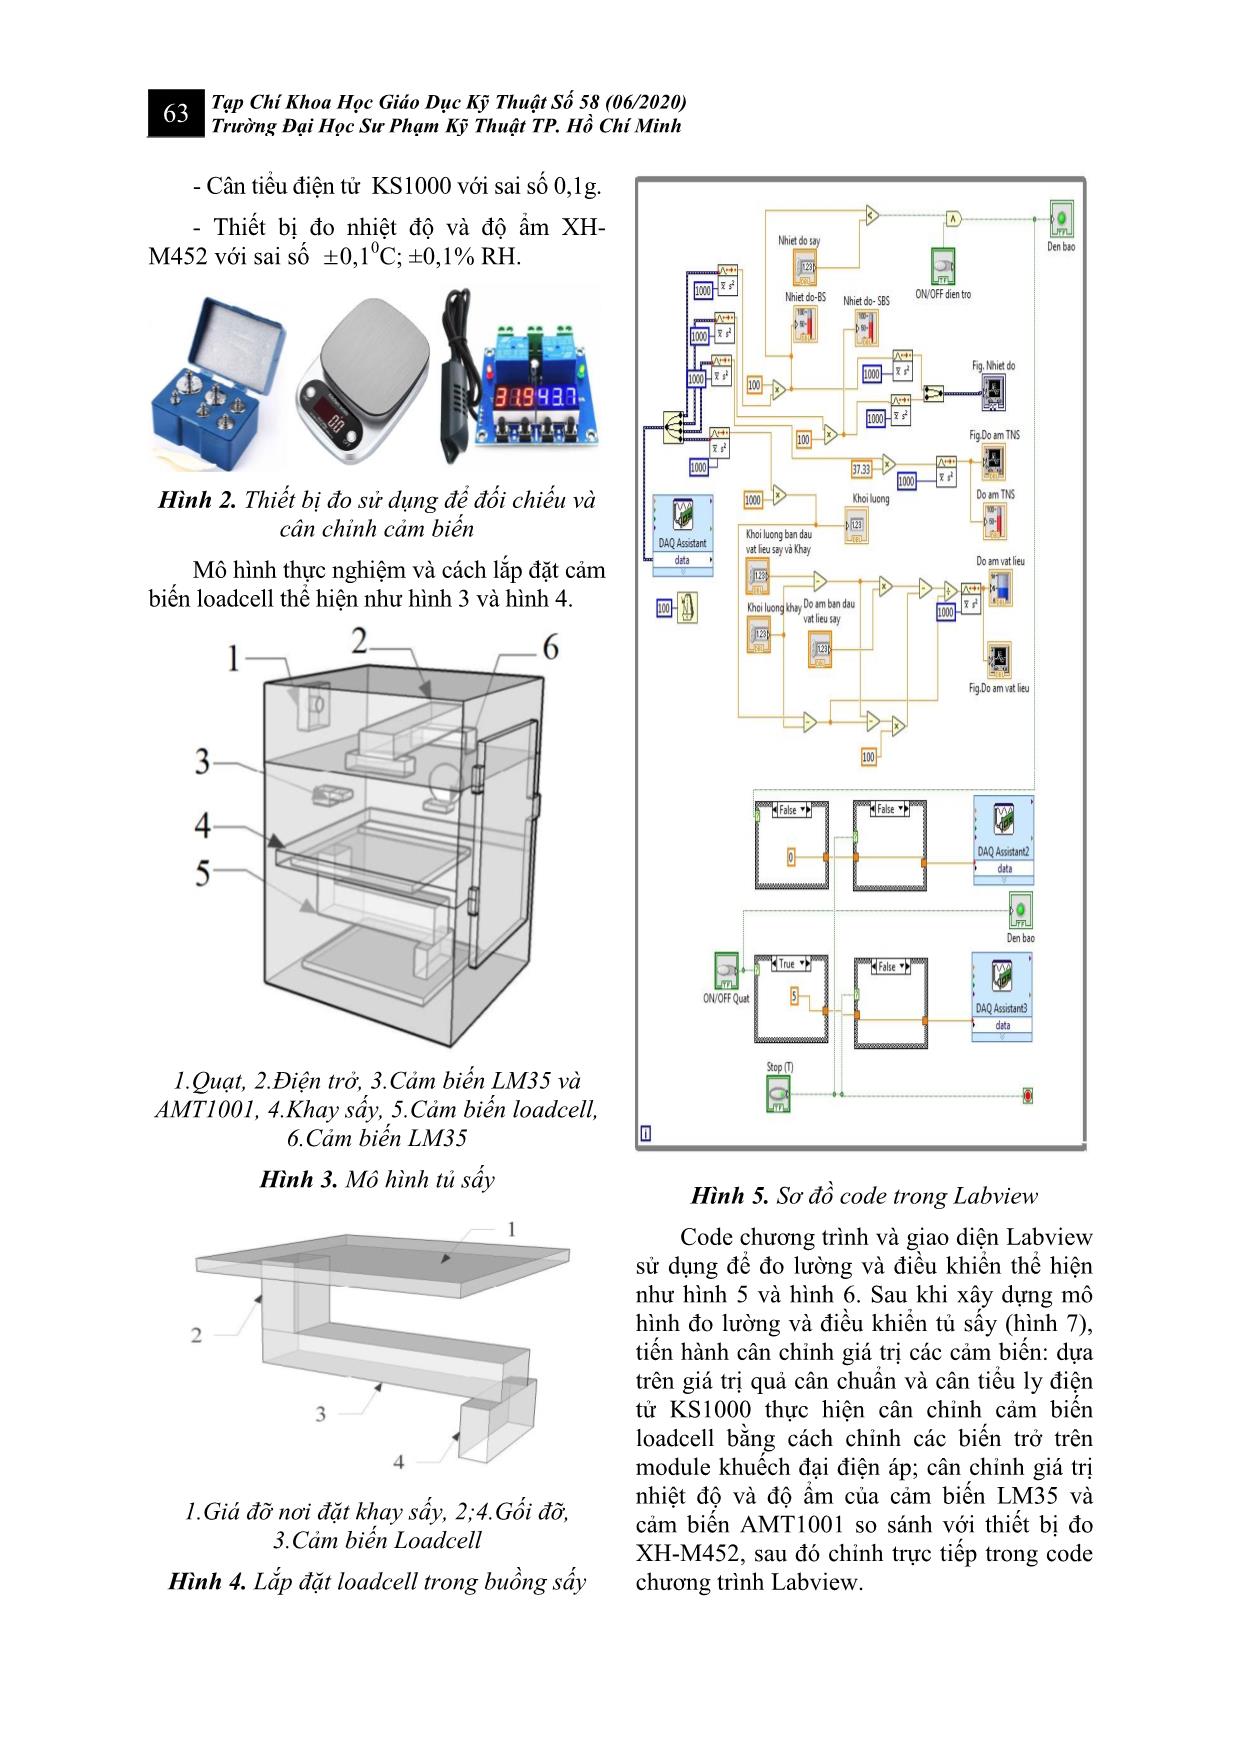 Đo lường và điều khiển tủ sấy sử dụng labview trang 4